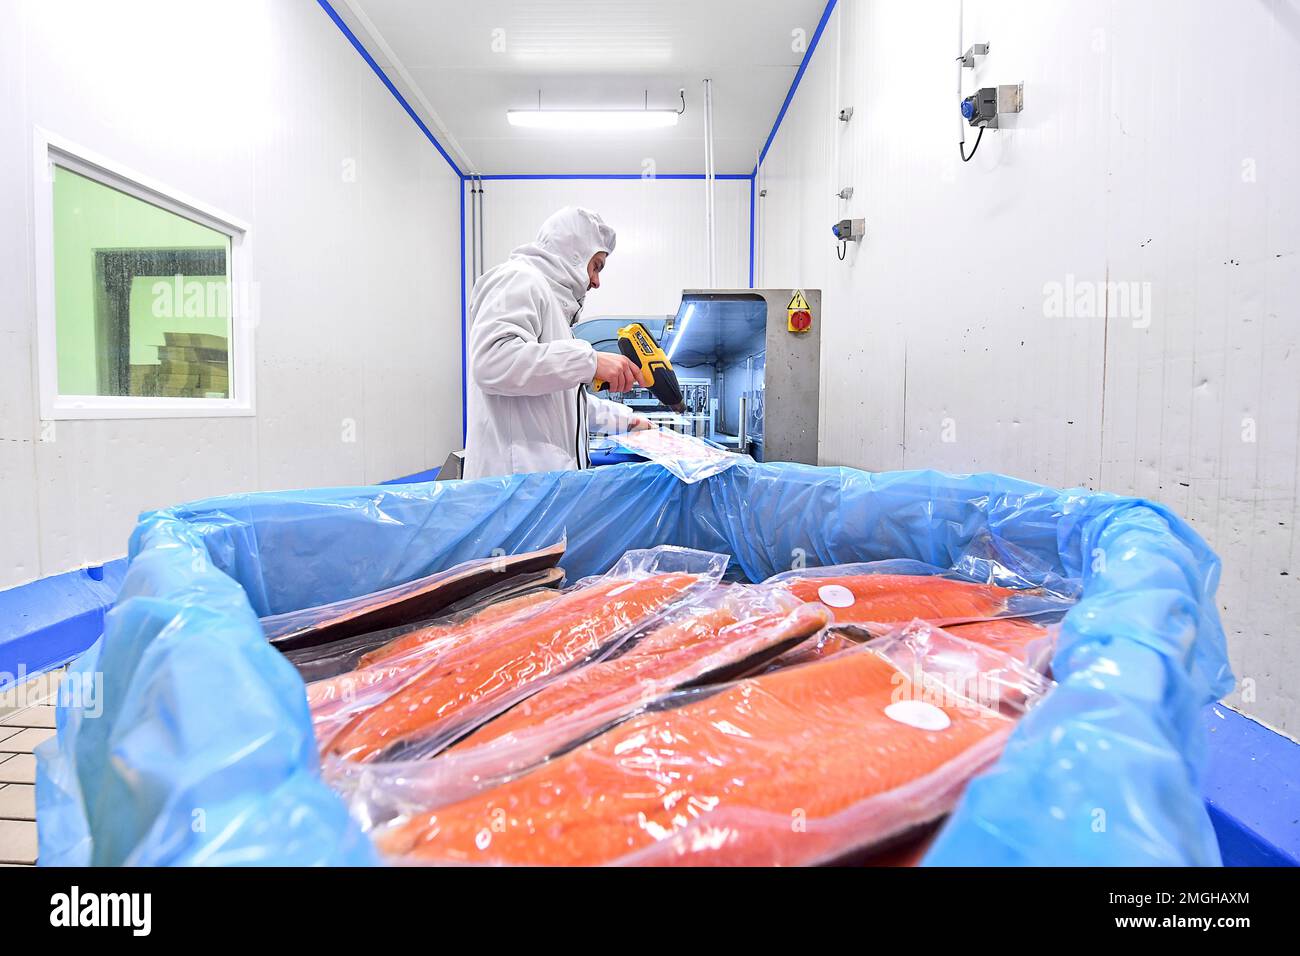 Boulogne-sur-Mer (Francia settentrionale): Gruppo a conduzione familiare le Garrec, specializzato in prodotti marini. Impianto di lavorazione e confezionamento del pesce. Salmone. Em Foto Stock